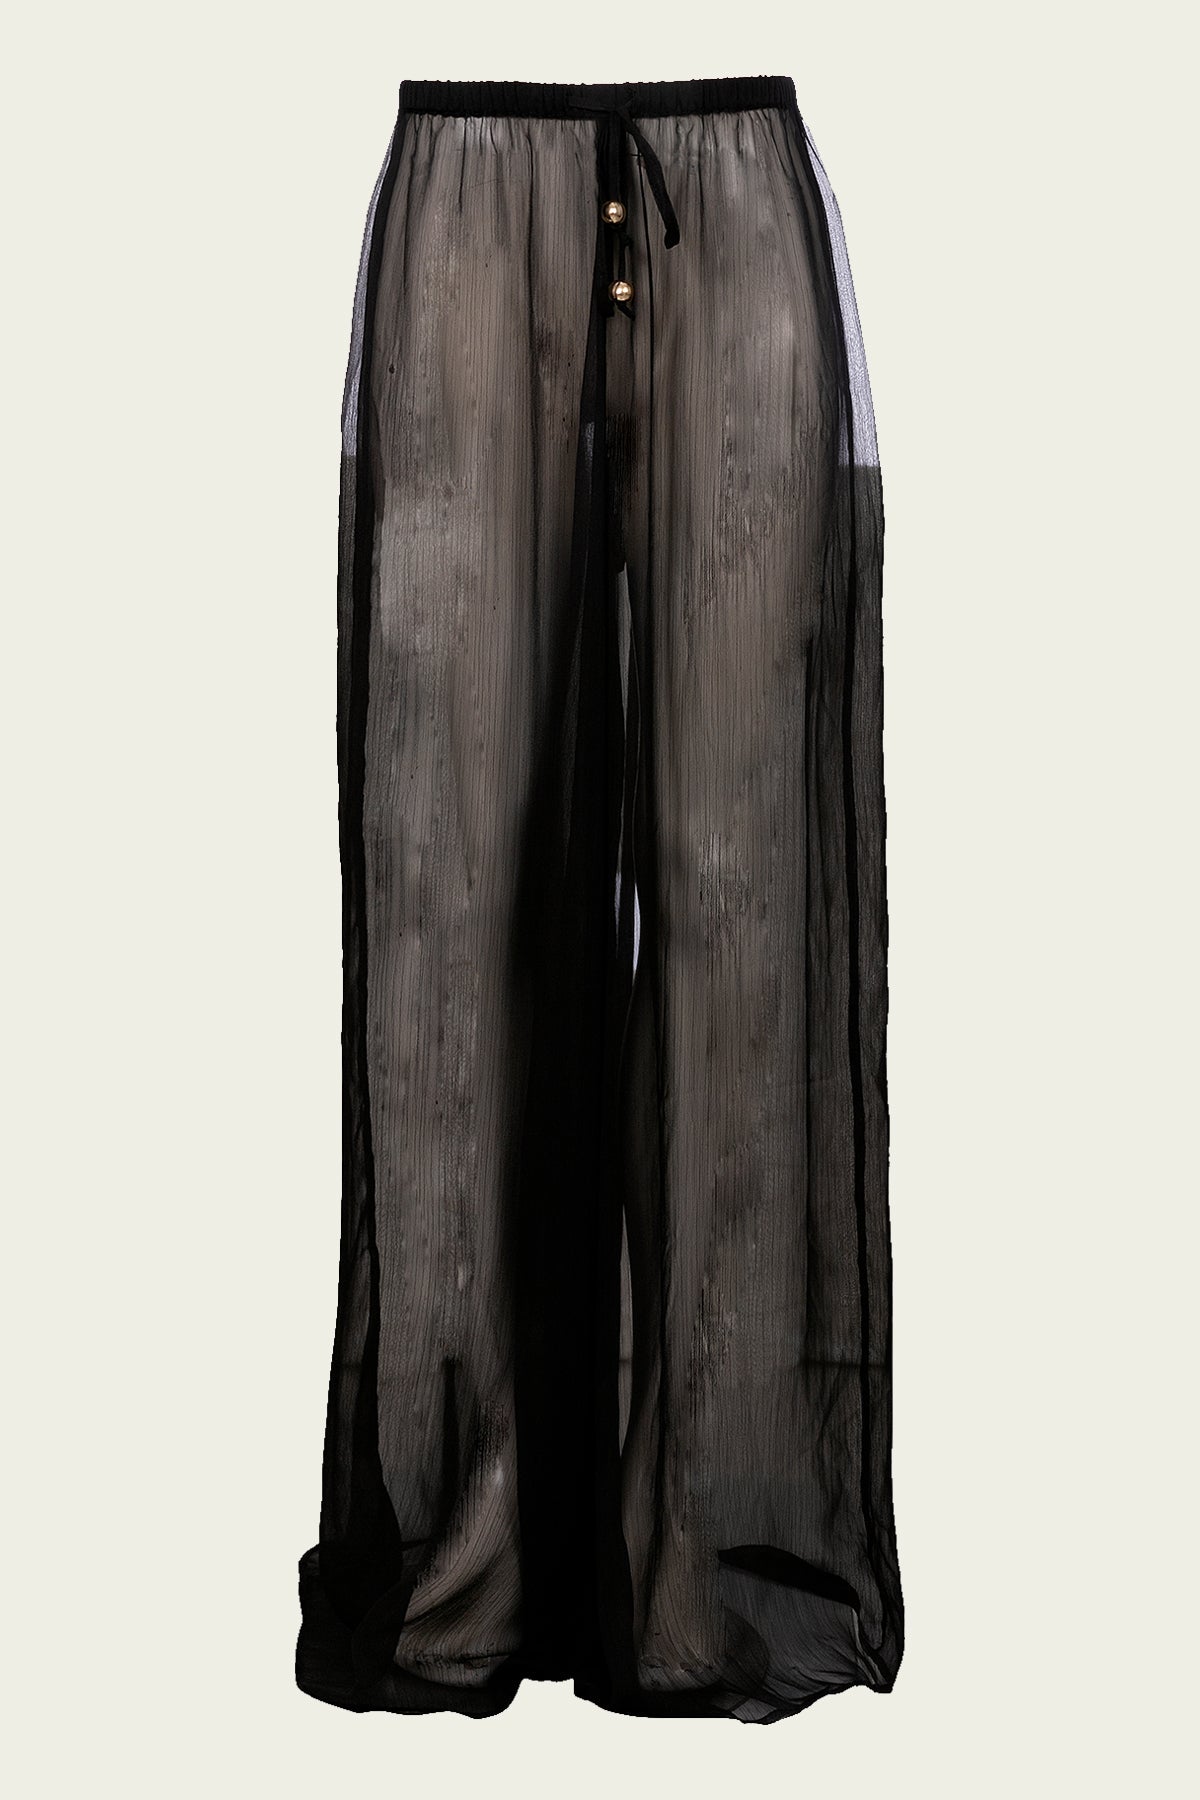 Alara Long Pants in Black - shop-olivia.com